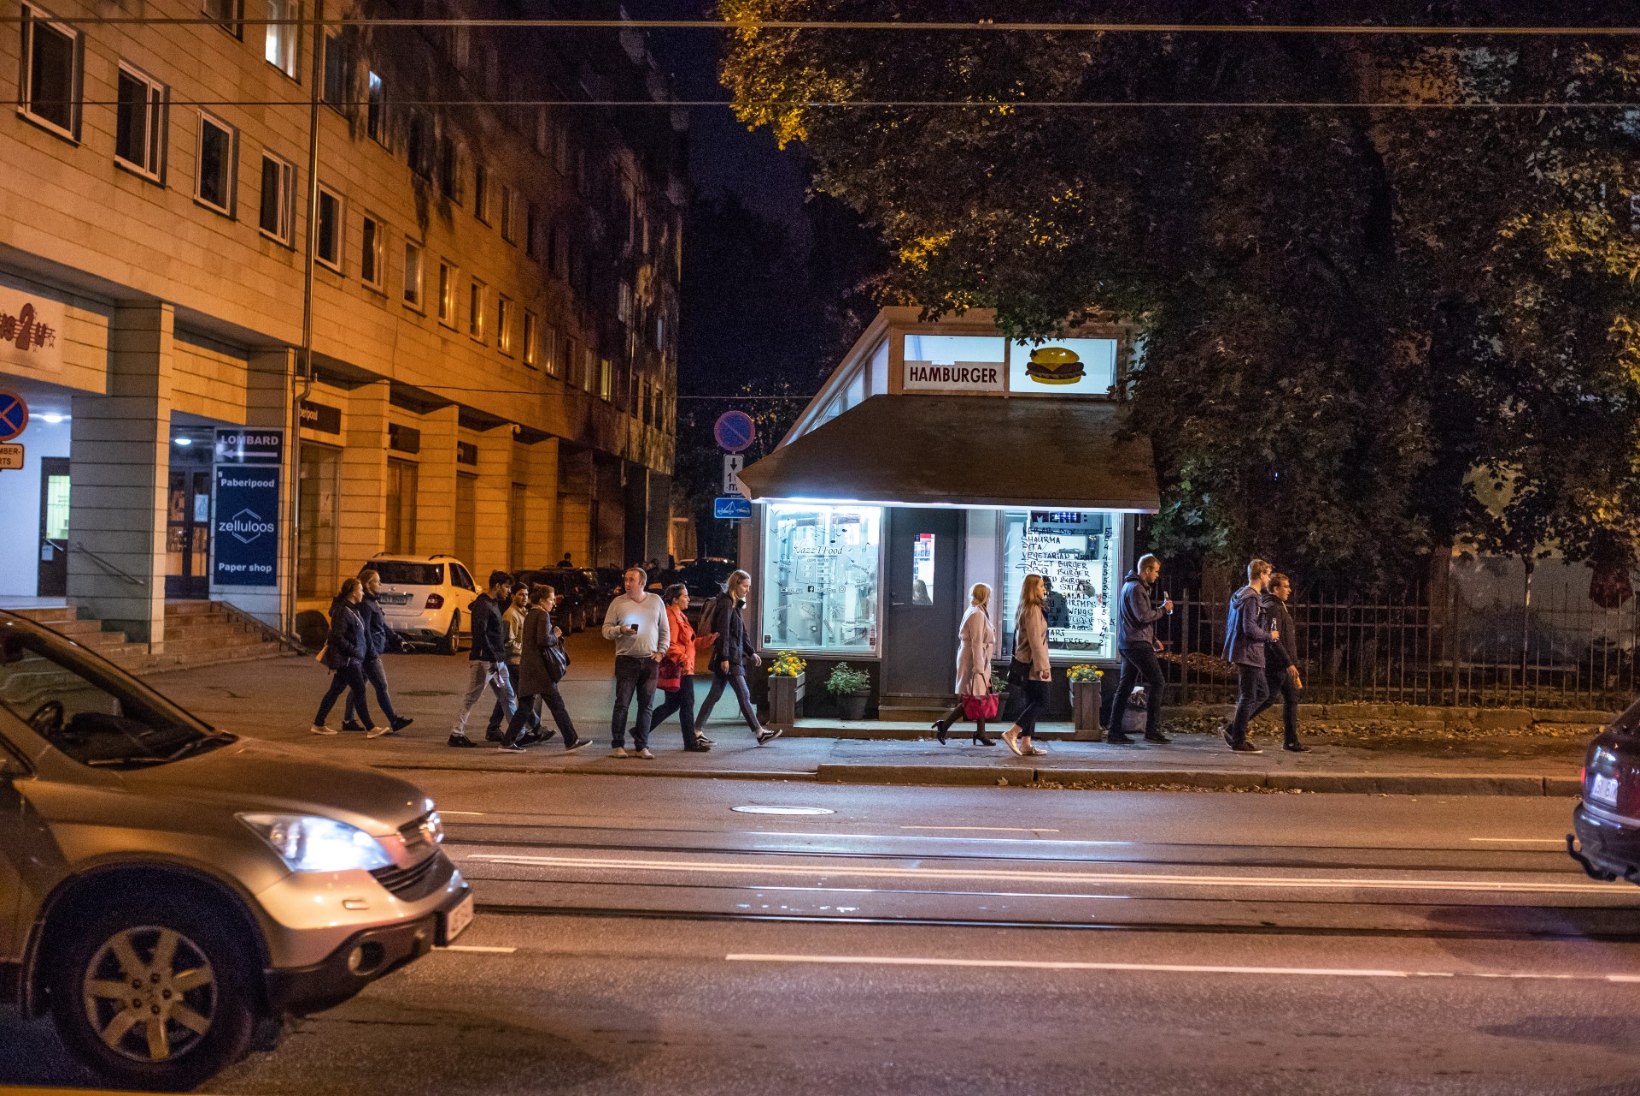 FOTOD | PISUT KITSAS: valgusfestivalilised pressisid end trammidesse, nii et millimeetritki ei jäänud üle